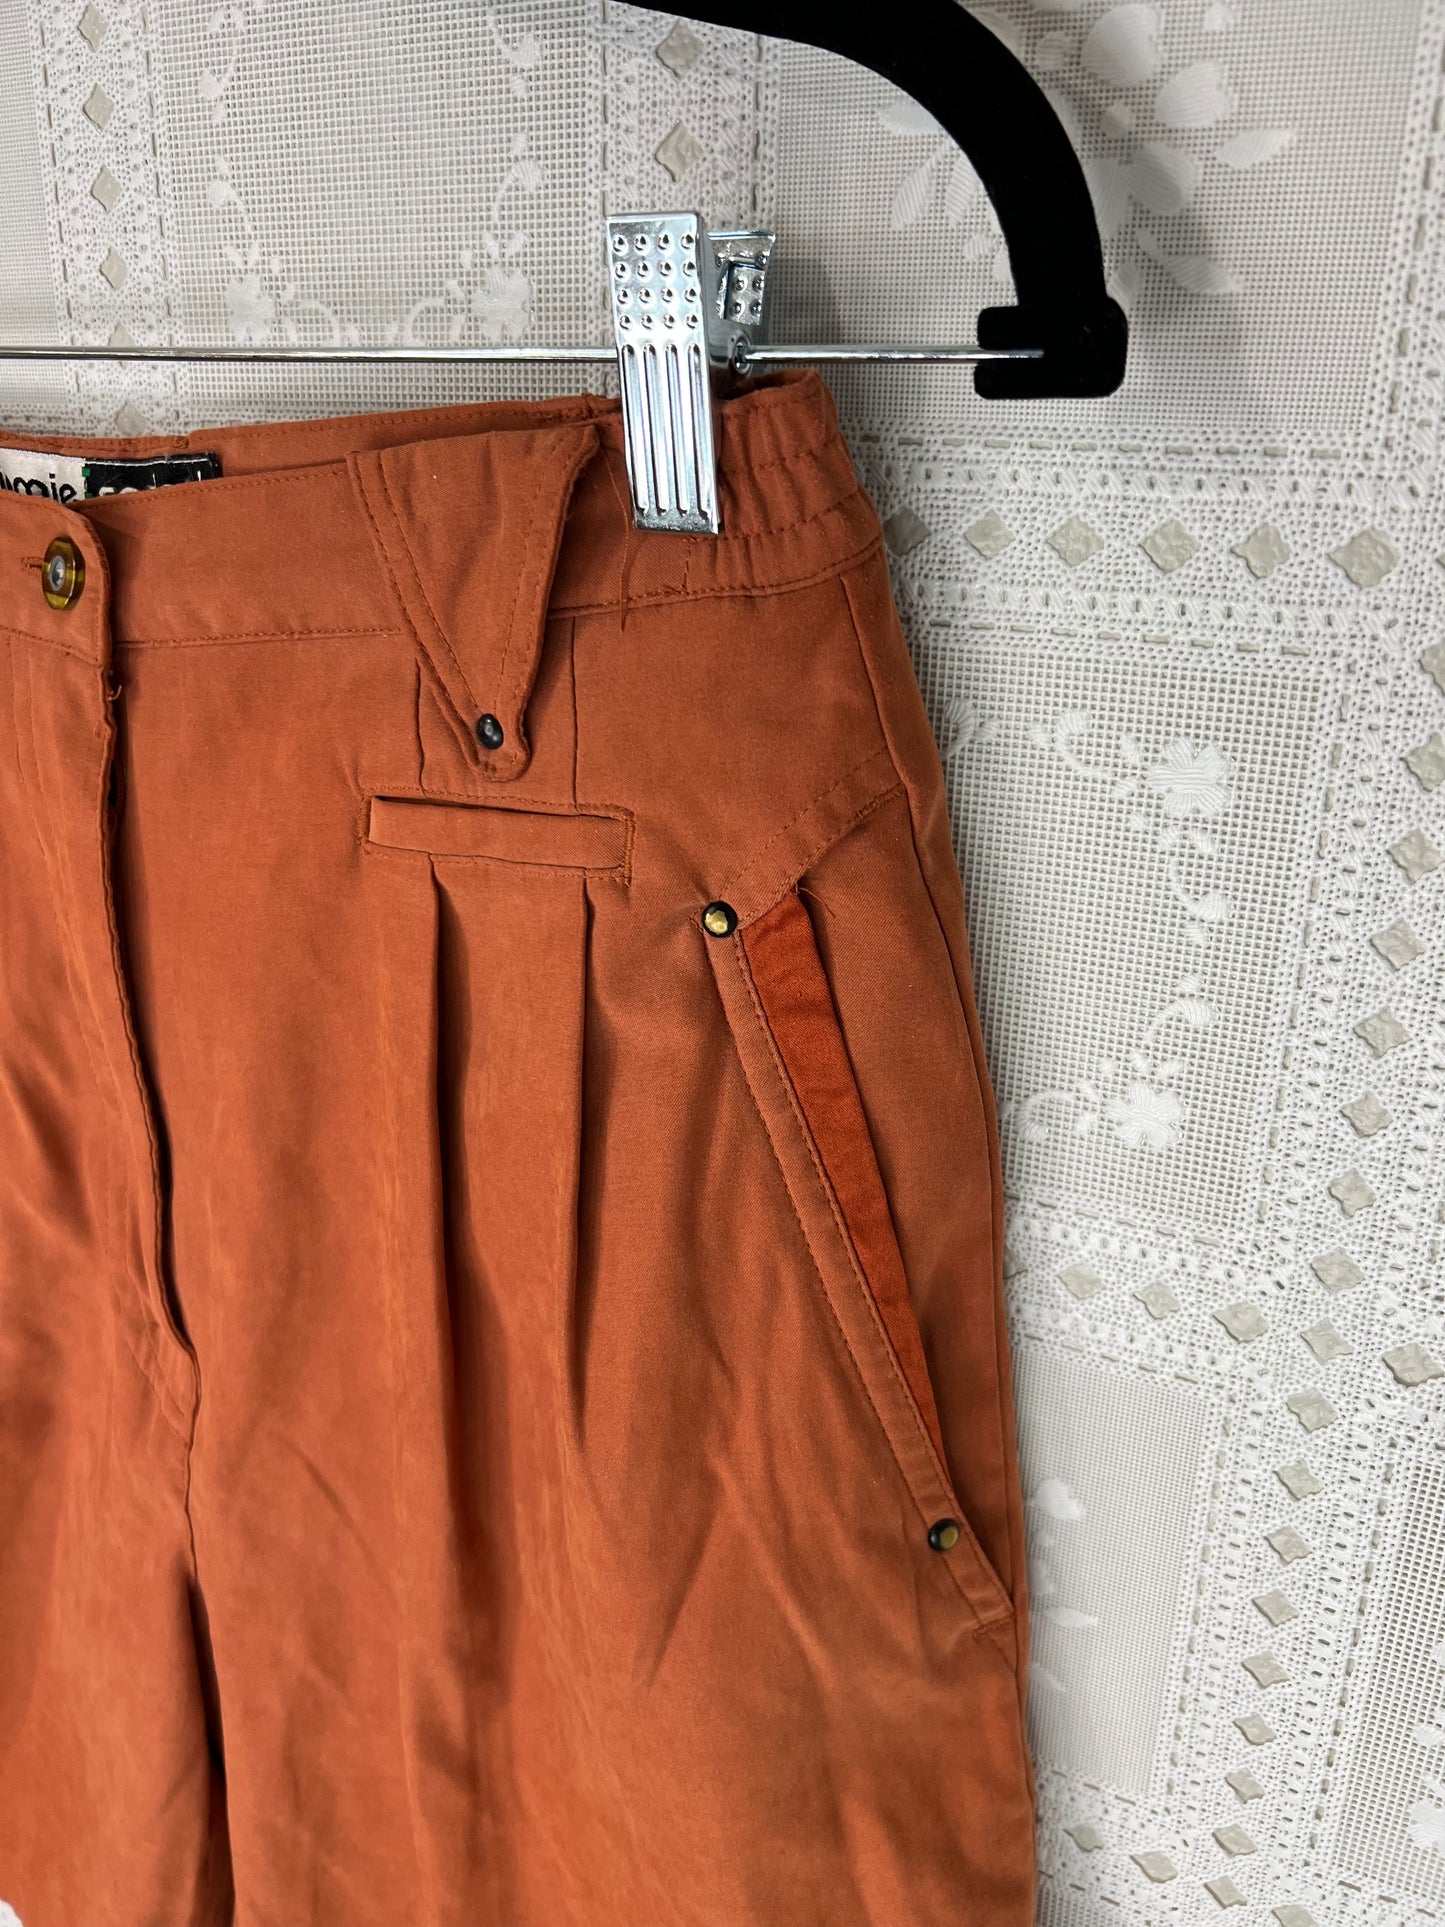 Jamie Sadock orange shorts women’s 6